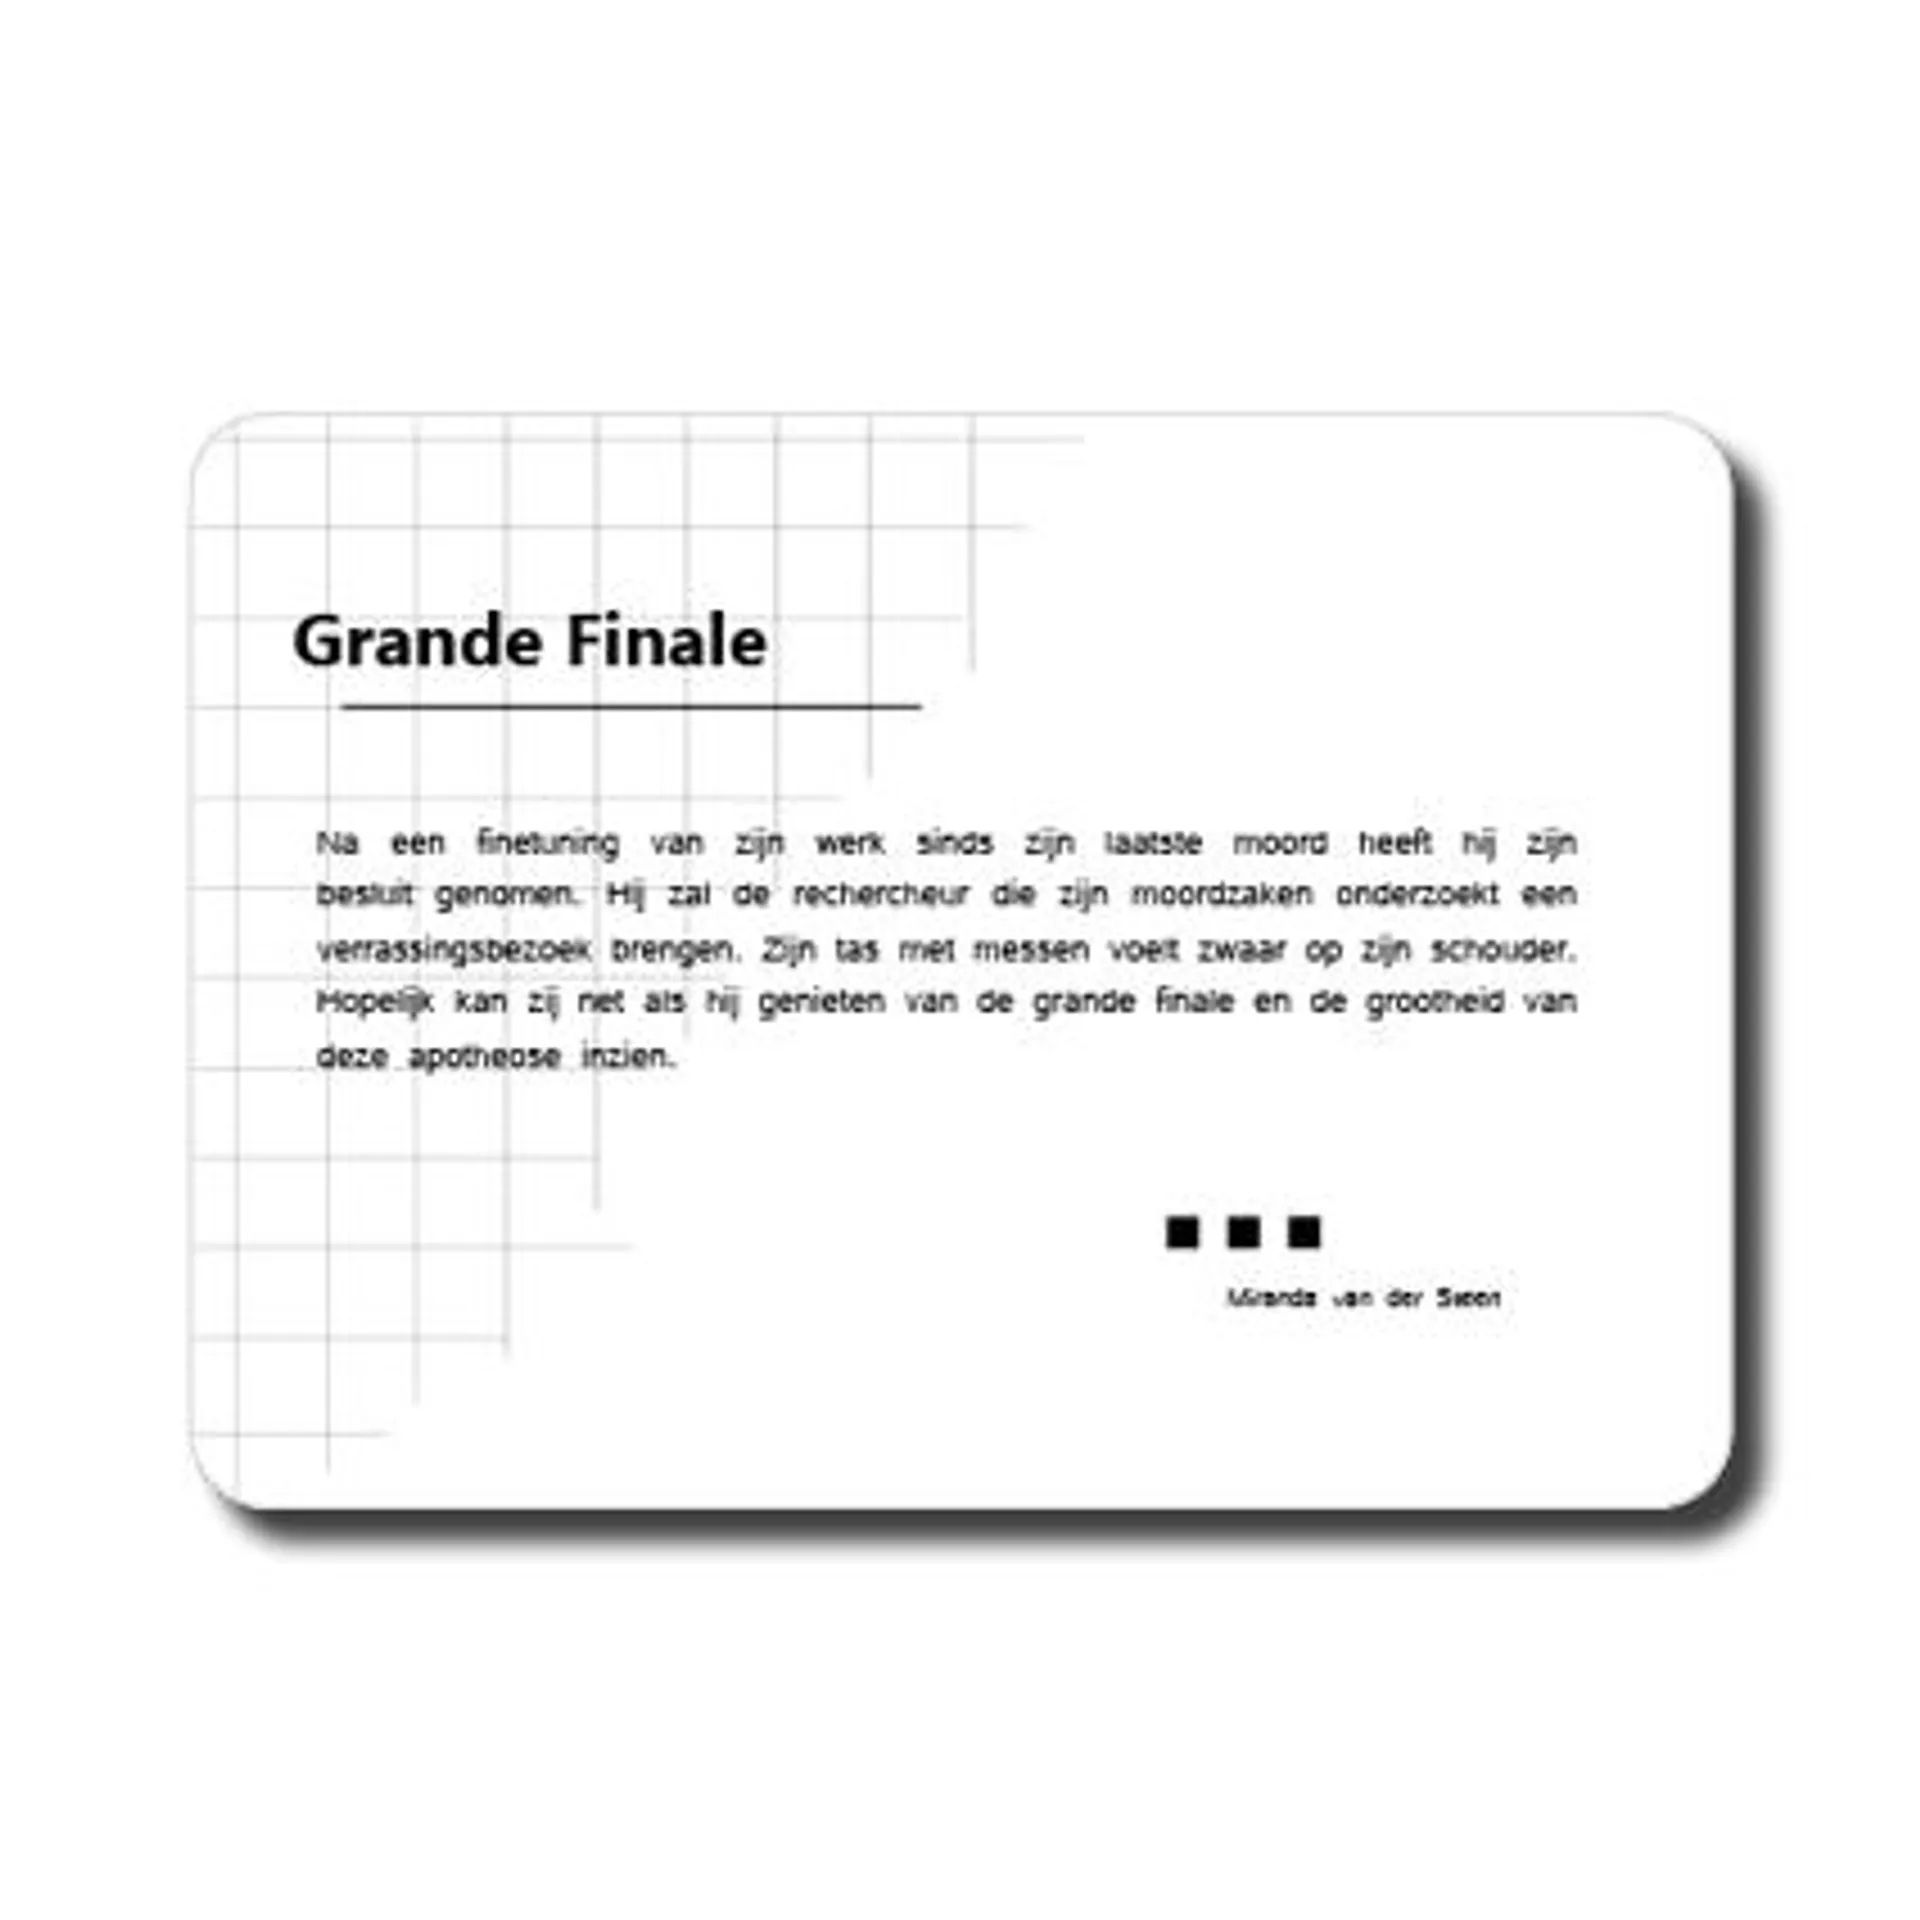 Ansichtkaart ‘Grande finale’ (zeer kort verhaal)